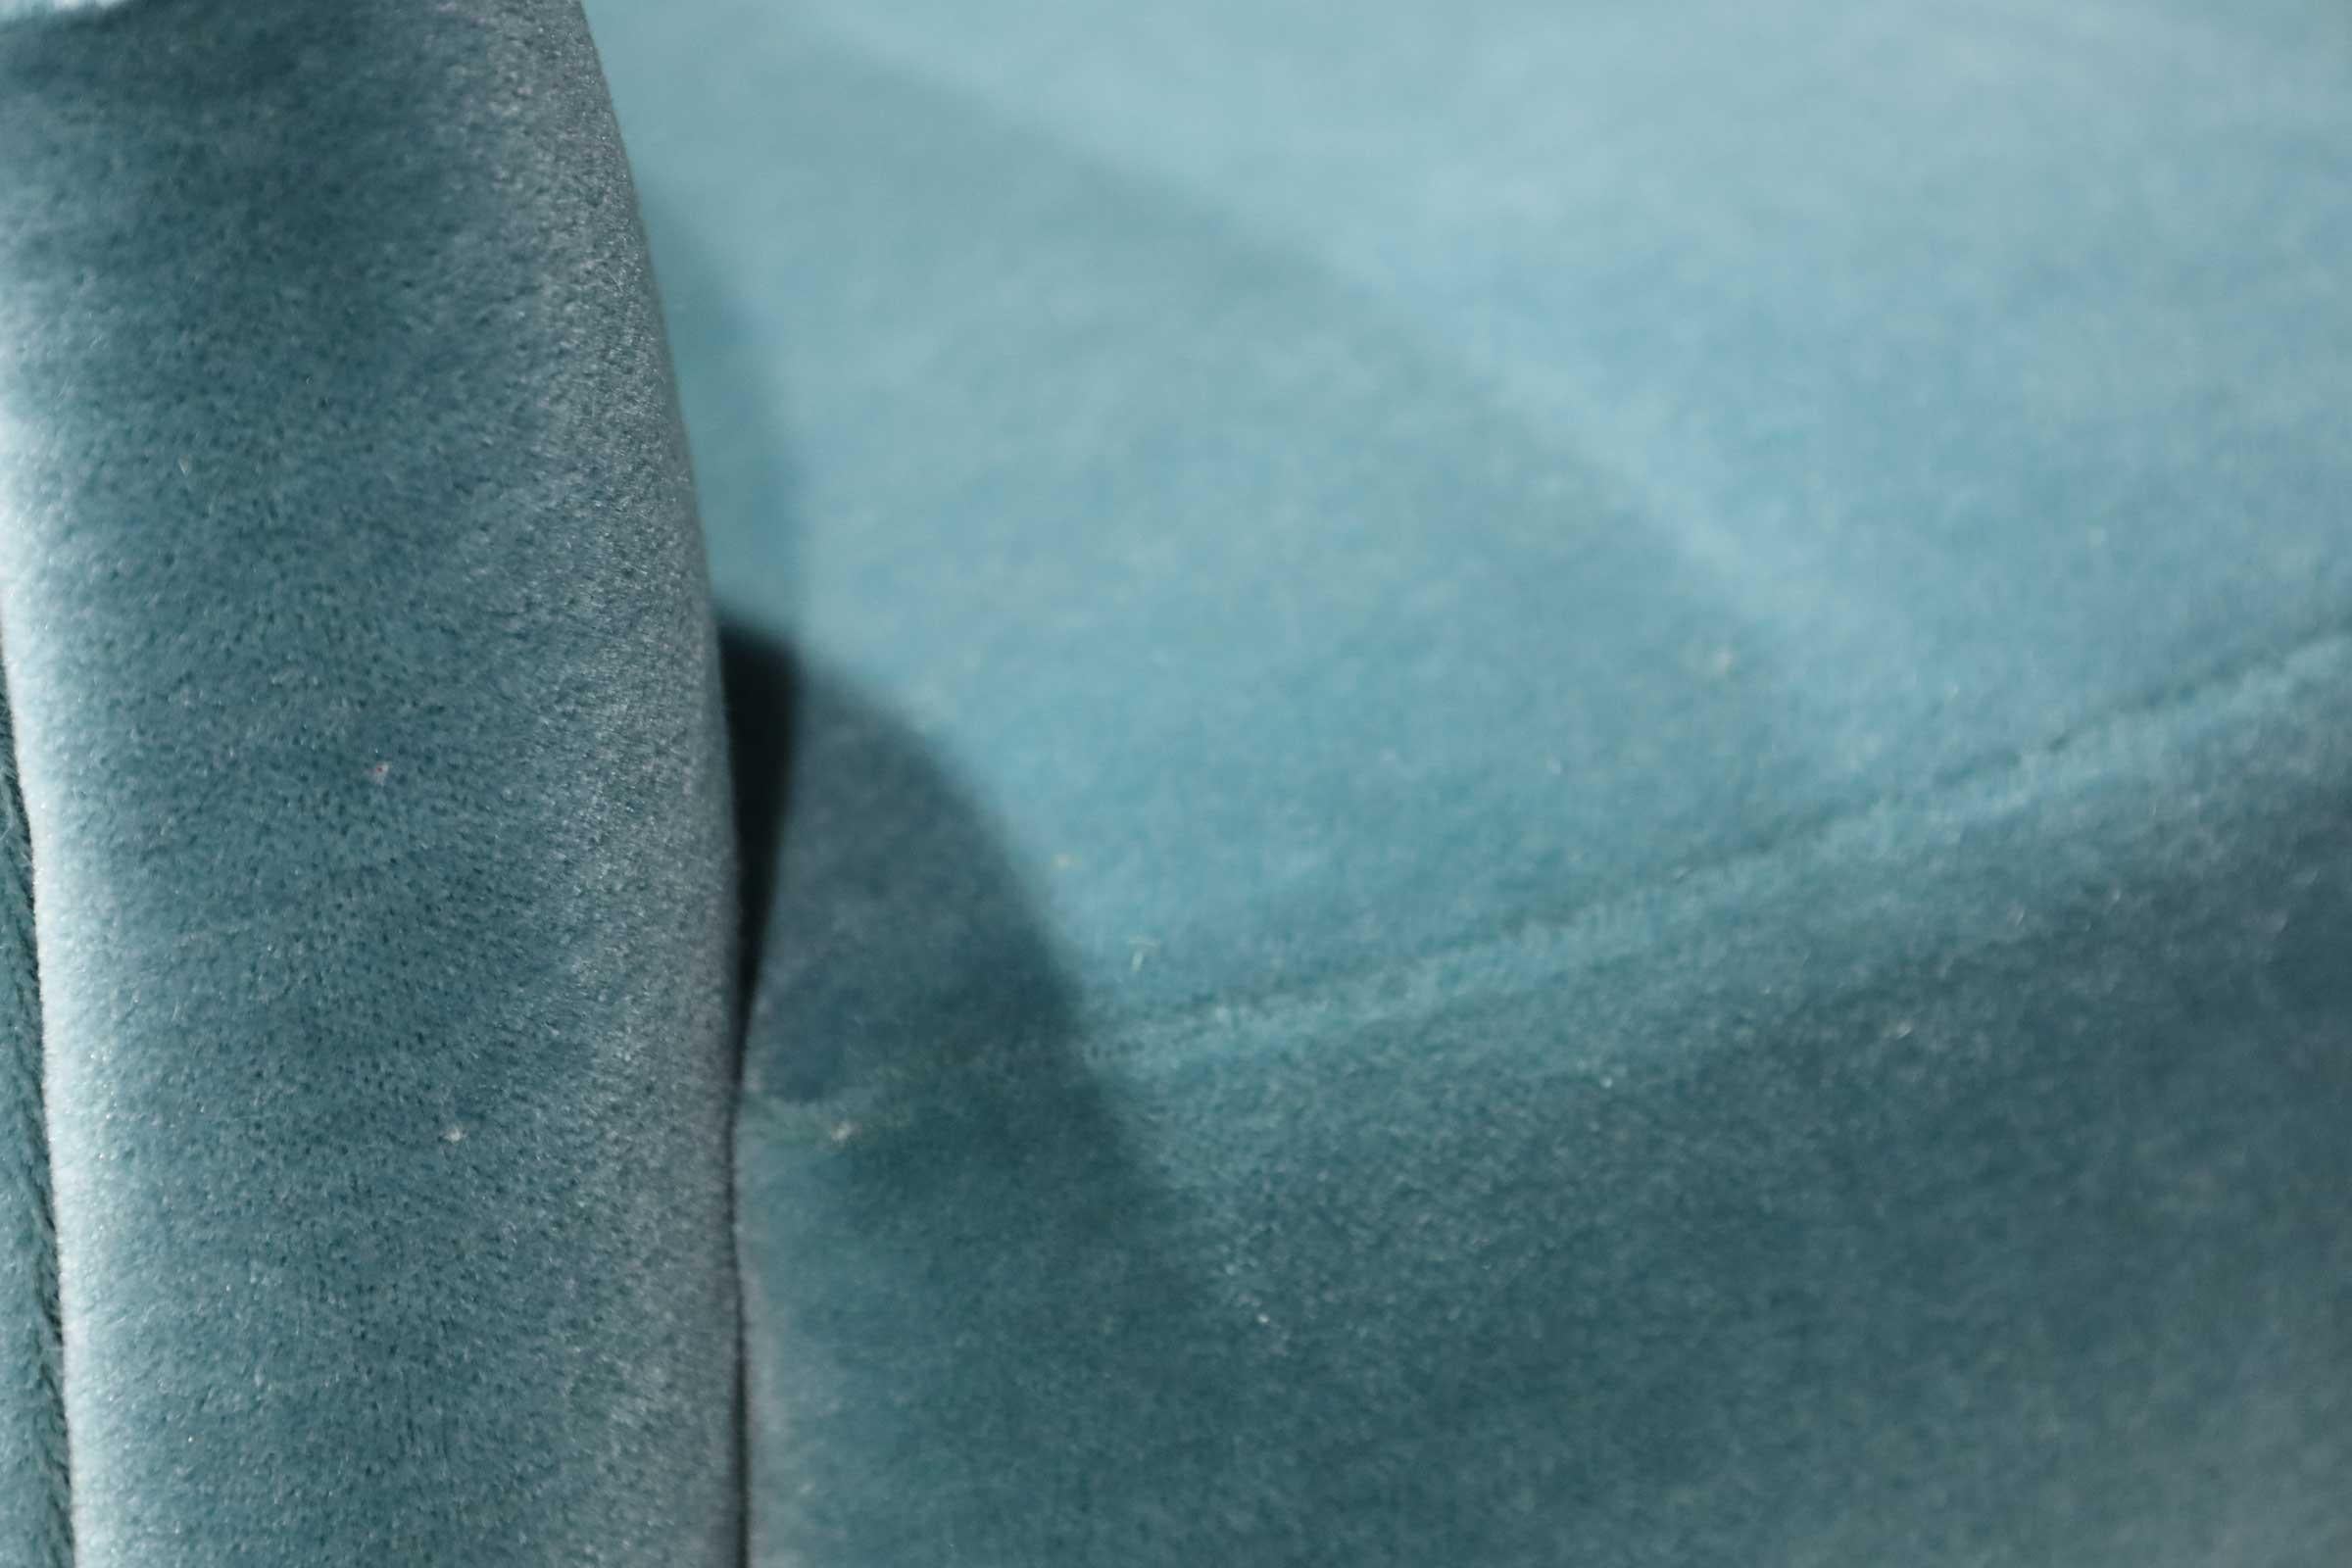 American Milo Baughman Tilt/Swivel Lounge Chairs in Dusty Blue Mohair